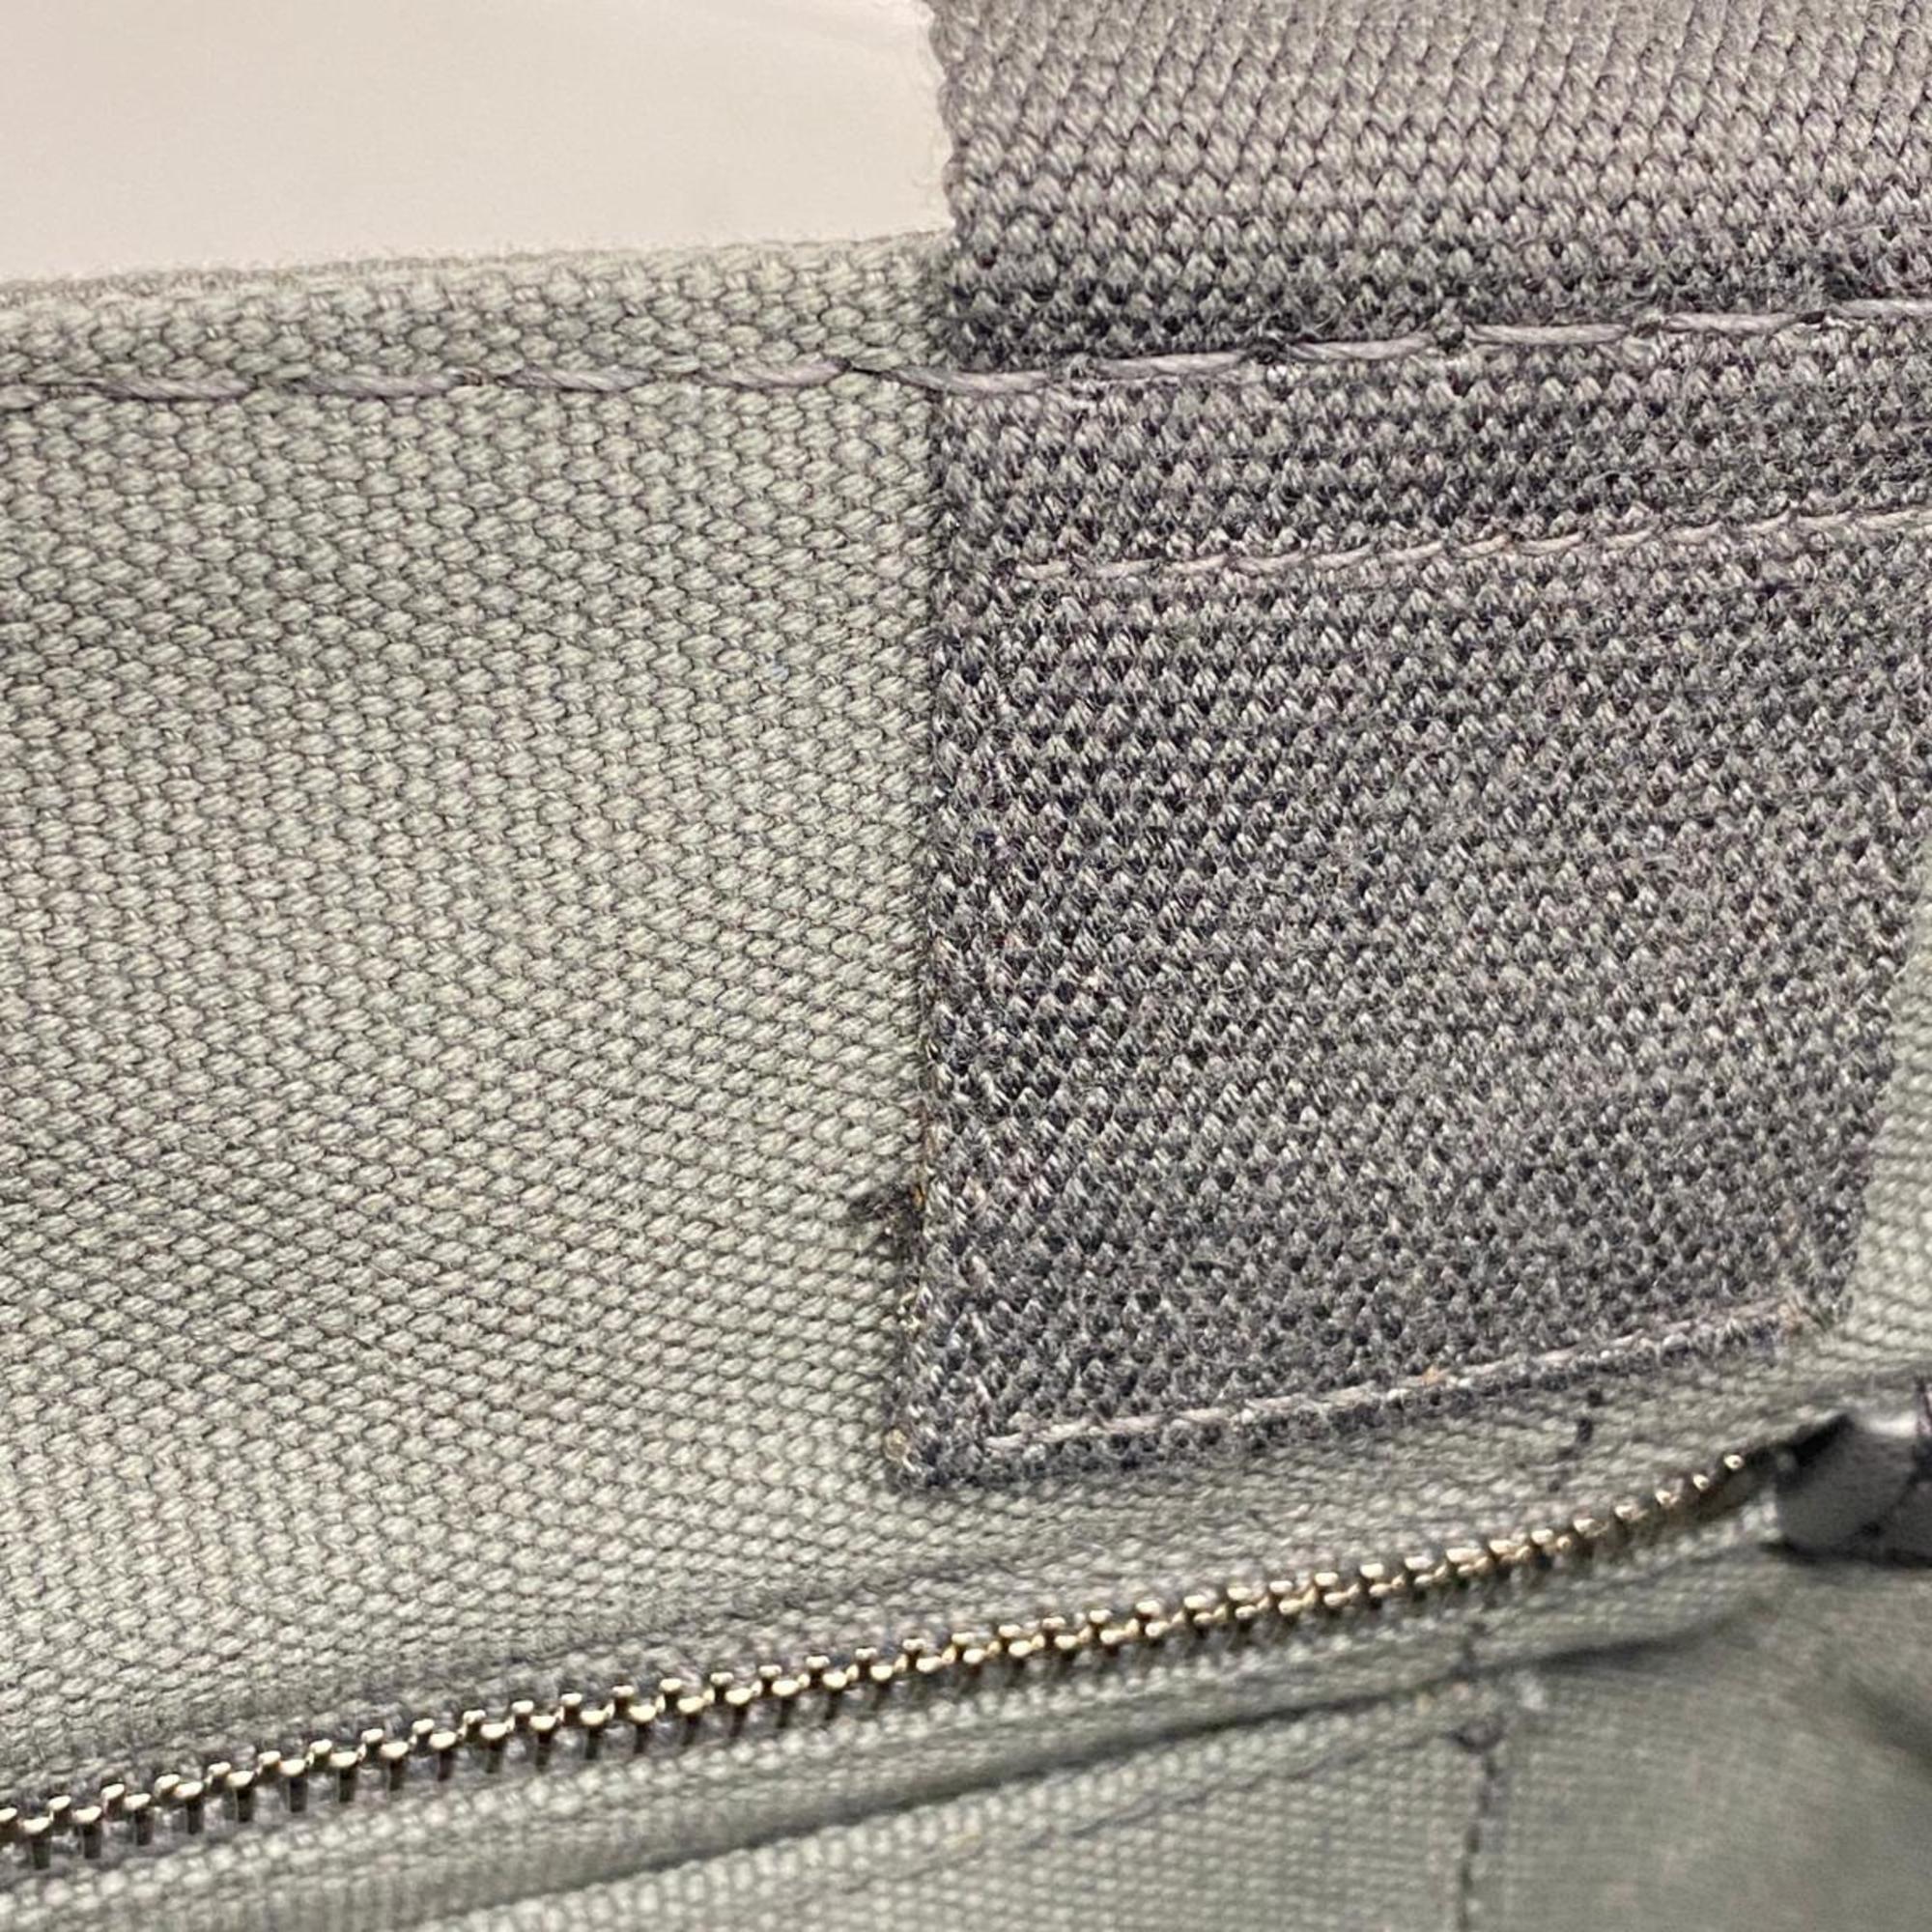 Prada handbag canapa canvas grey ladies